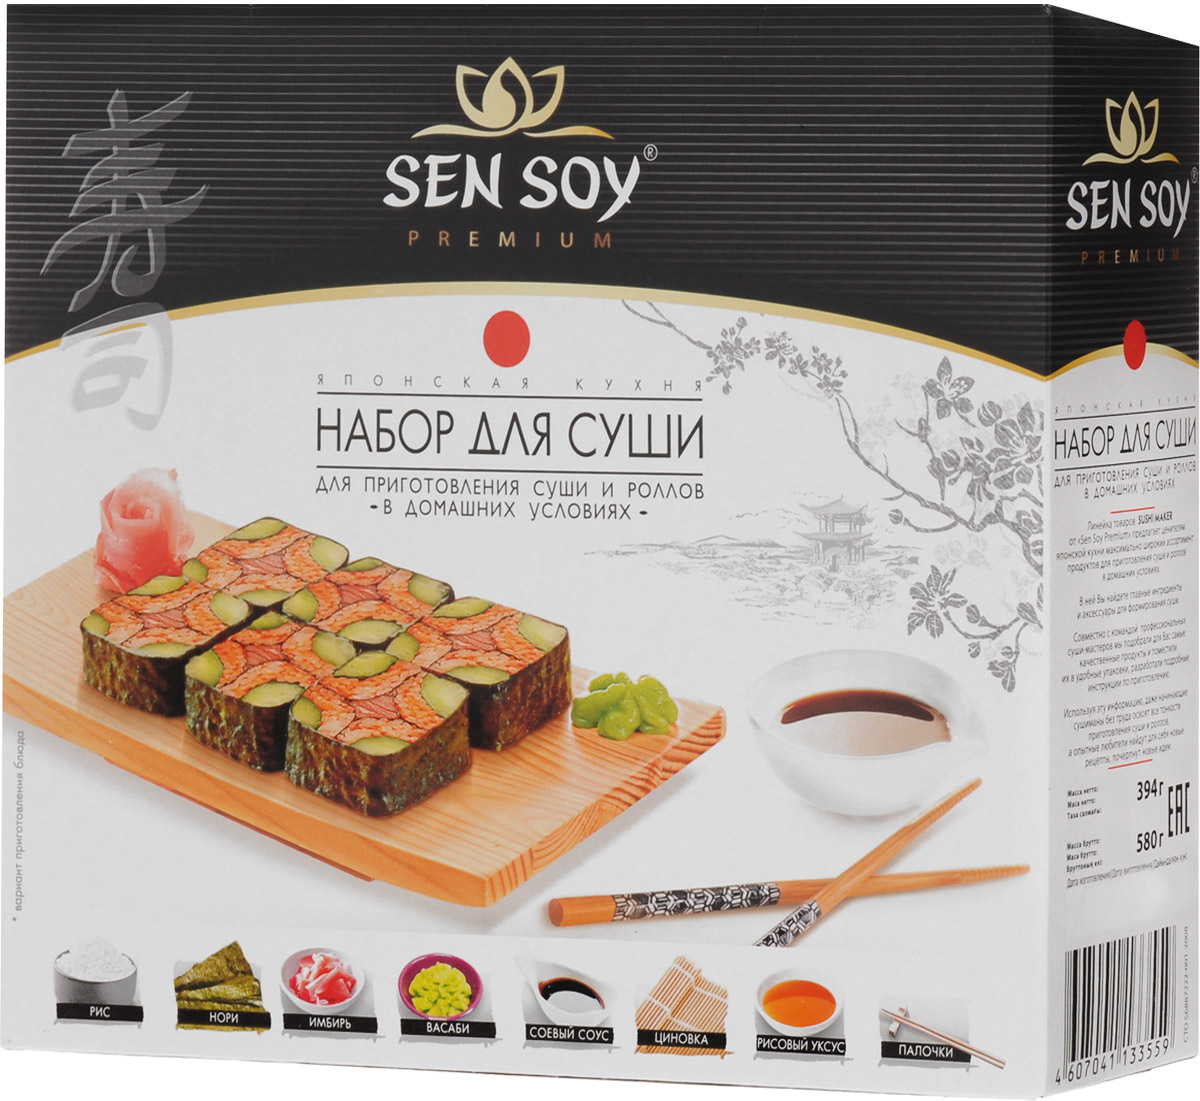 Sen Soy Набор для суши, 394 г